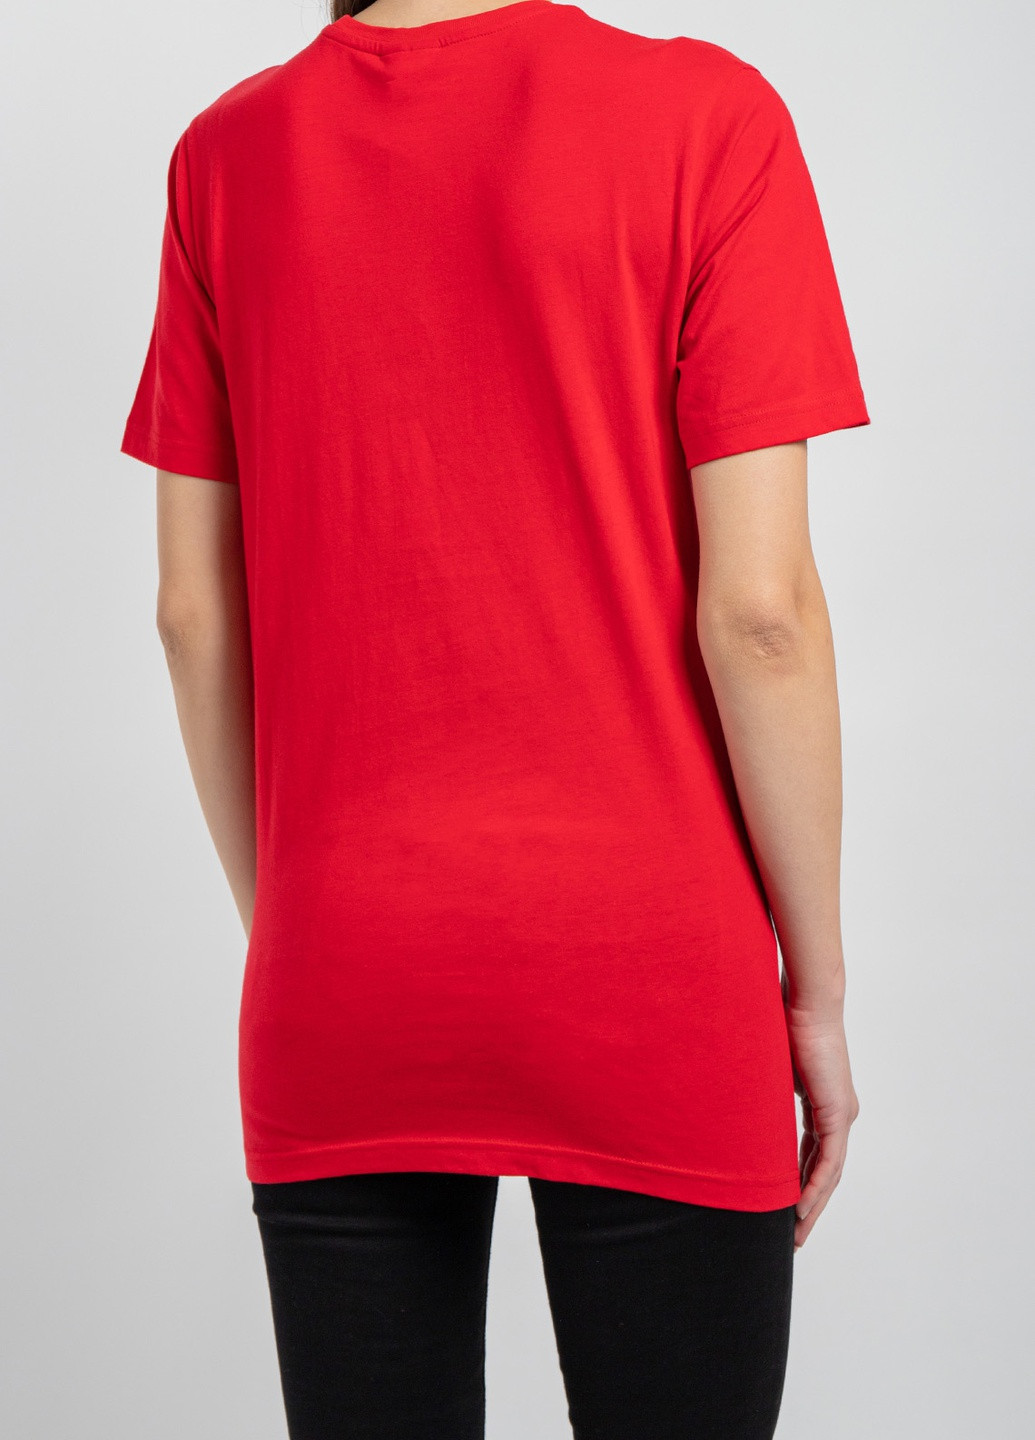 Красная всесезон серая футболка с вышитым логотипом Supreme Spain